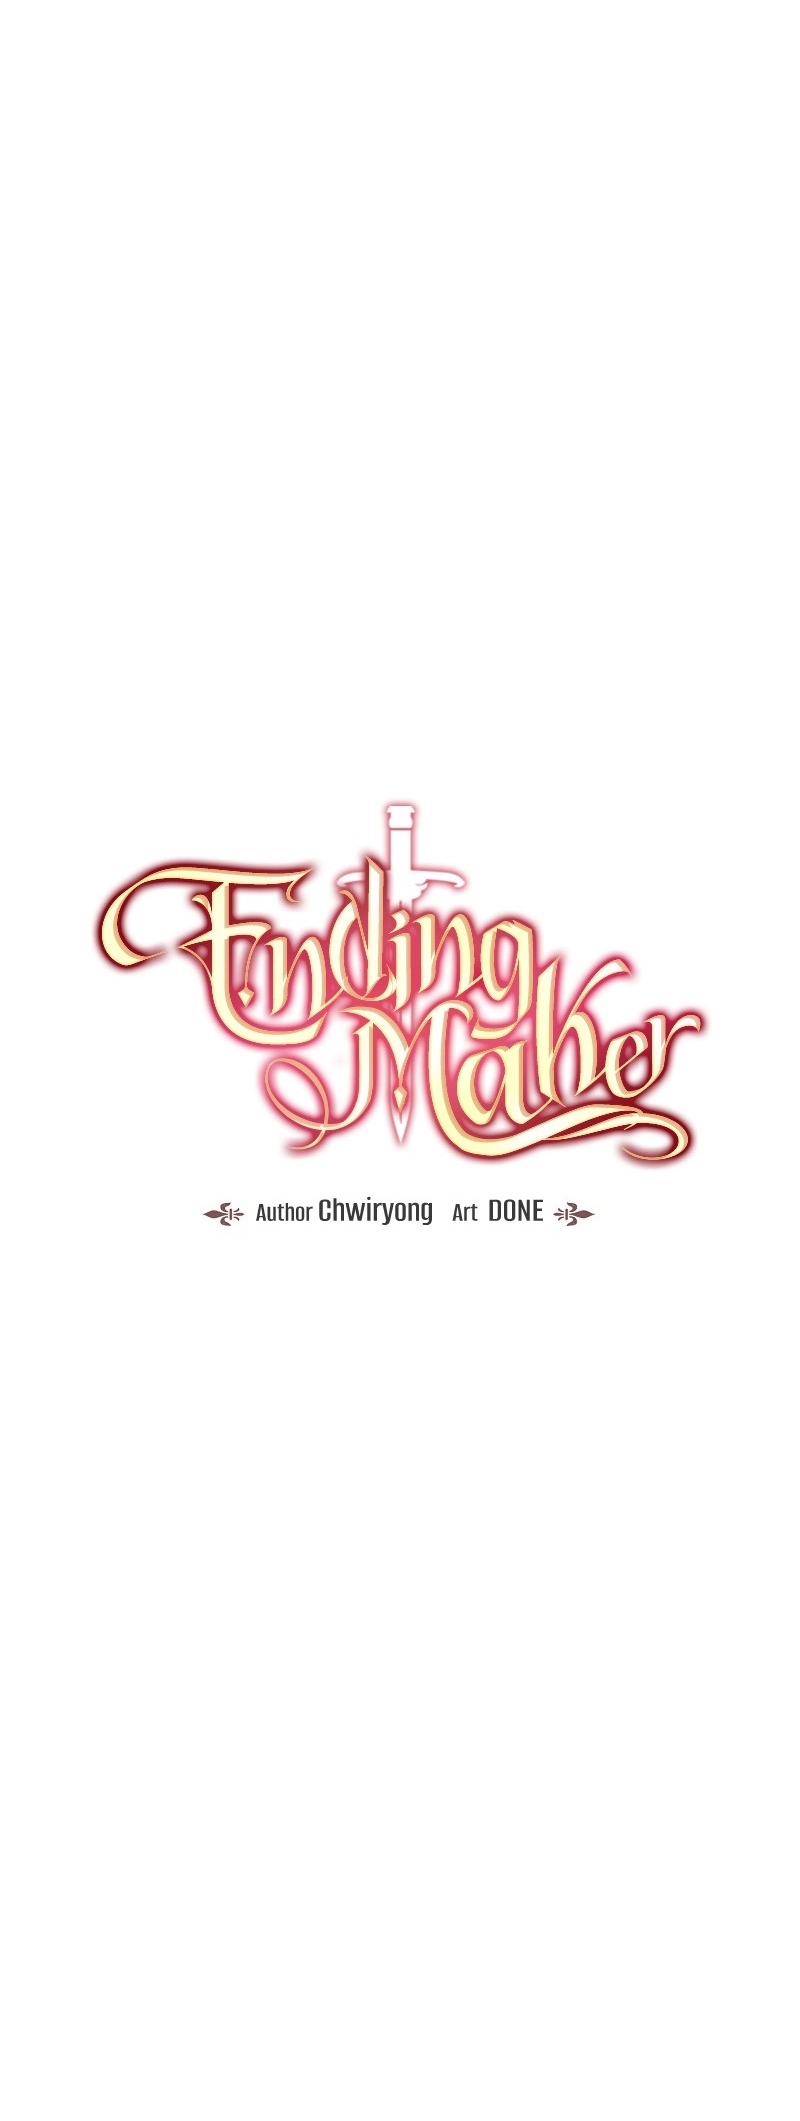 Ending-Maker-18-7.jpg